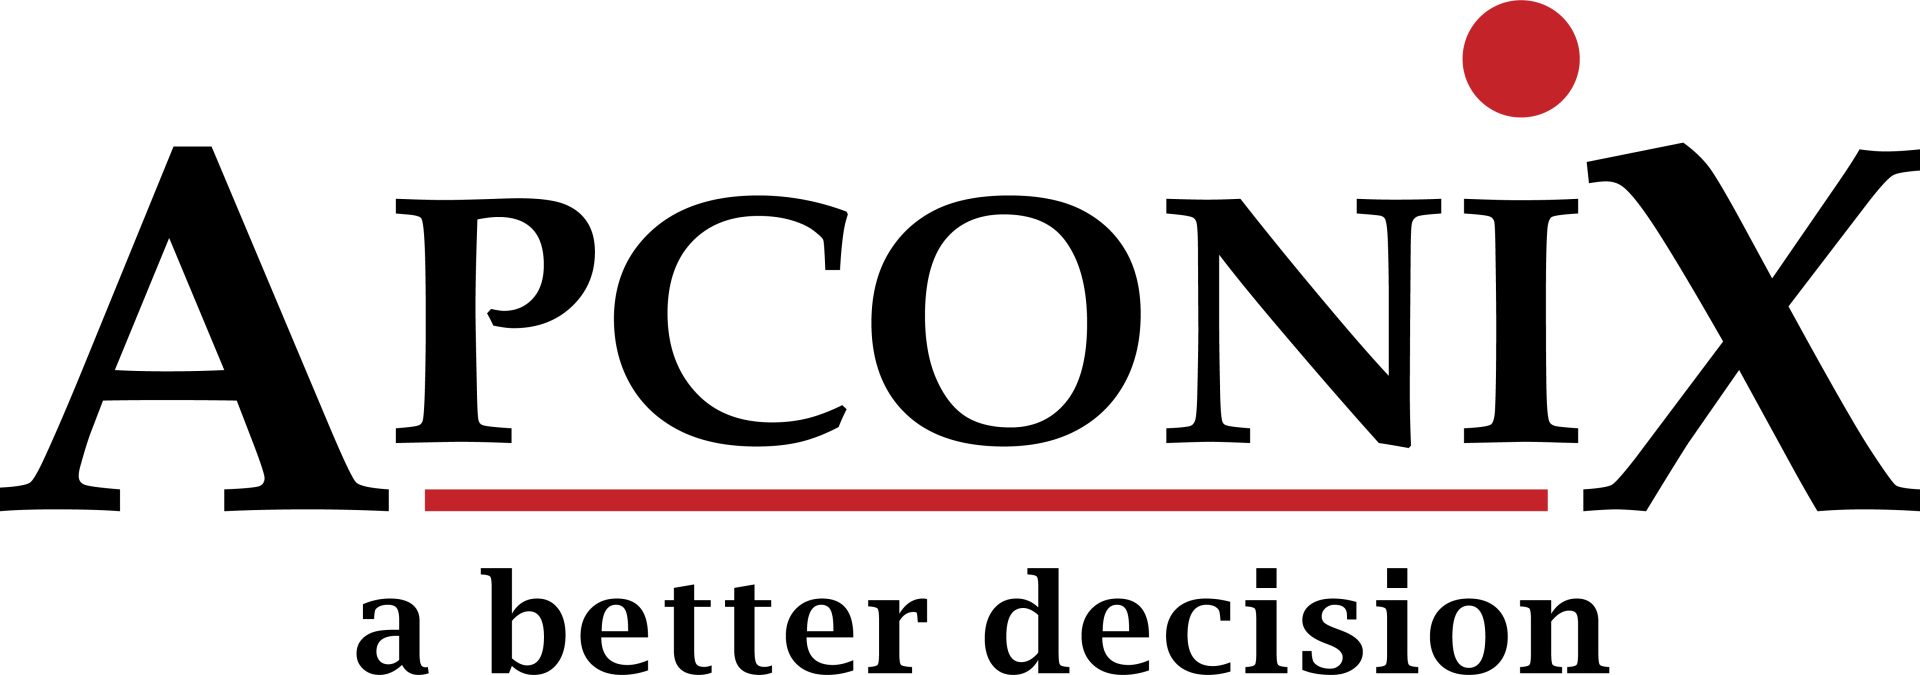 ApconiX_Logo